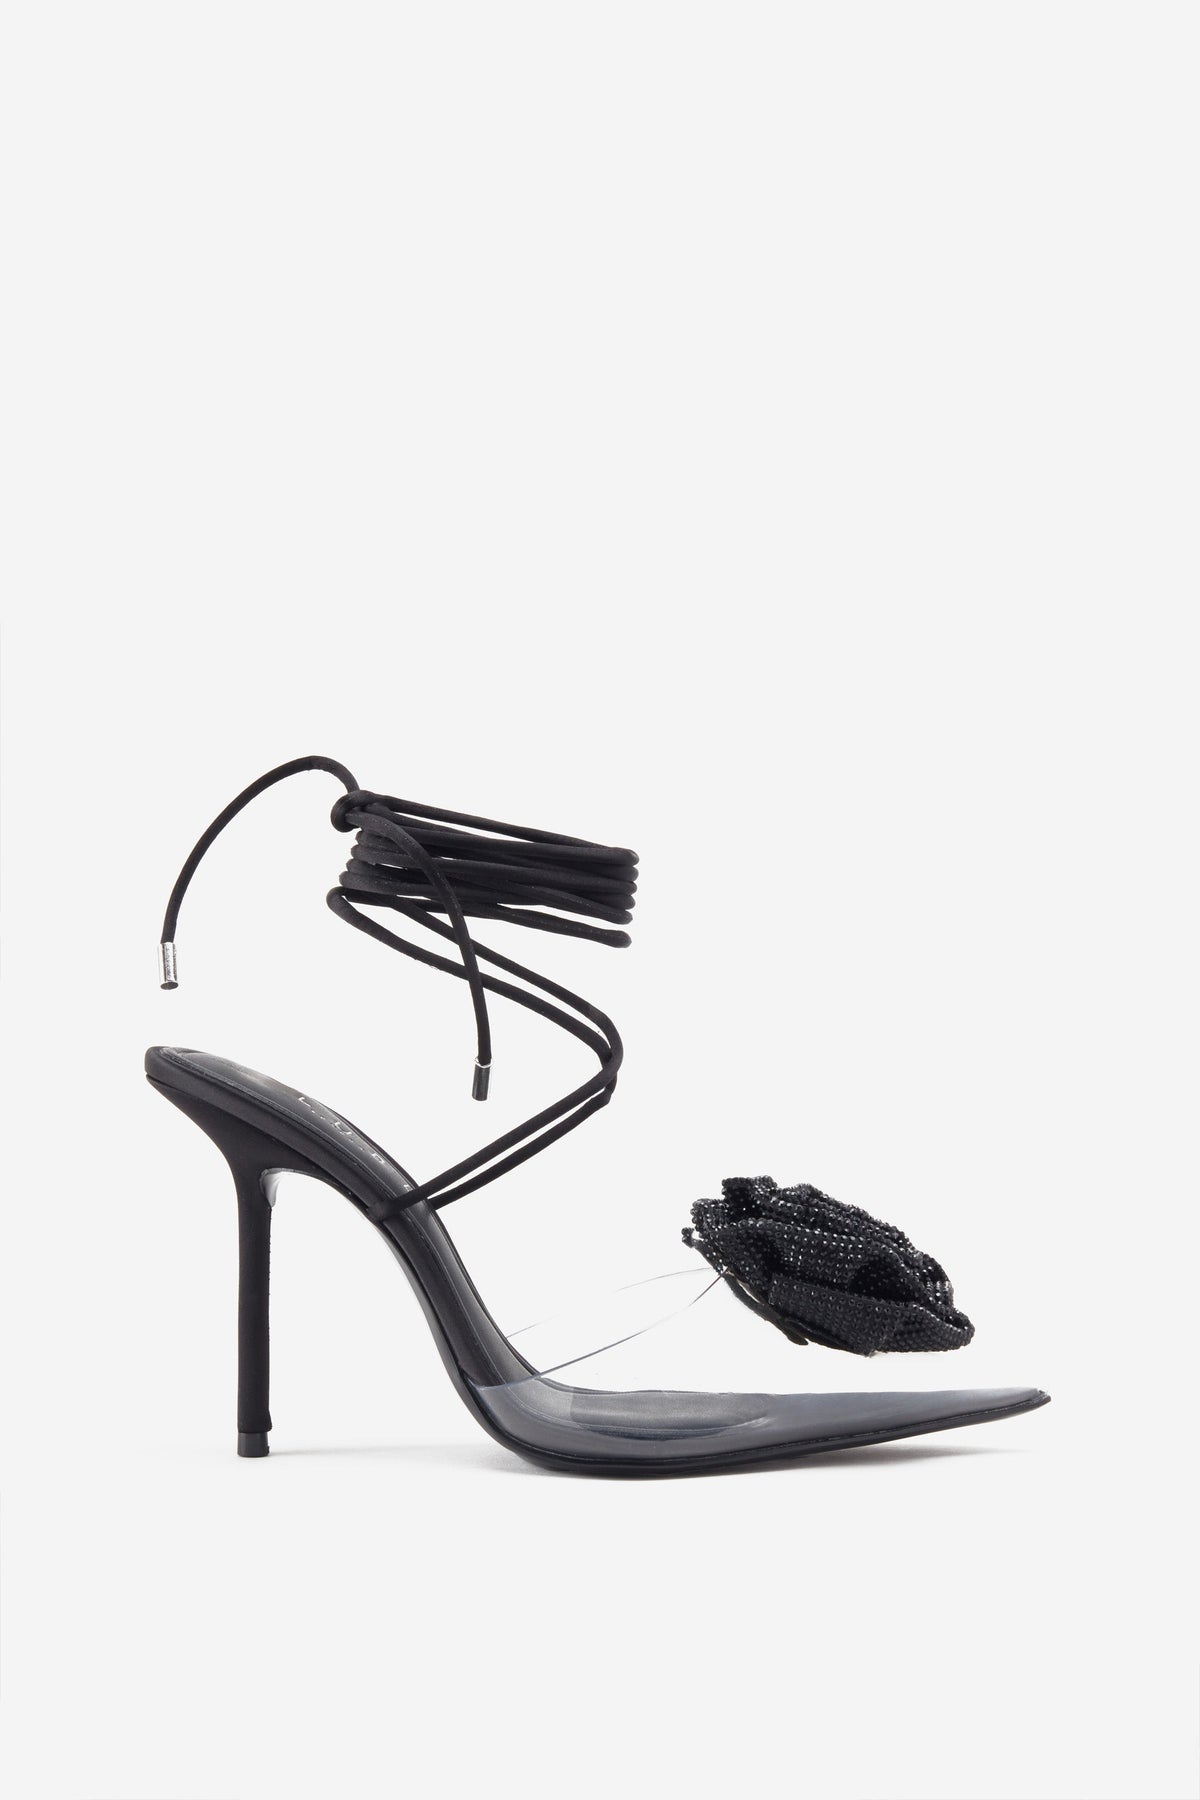 Buy Black Heeled Shoes for Women by Sneak-a-Peek Online | Ajio.com